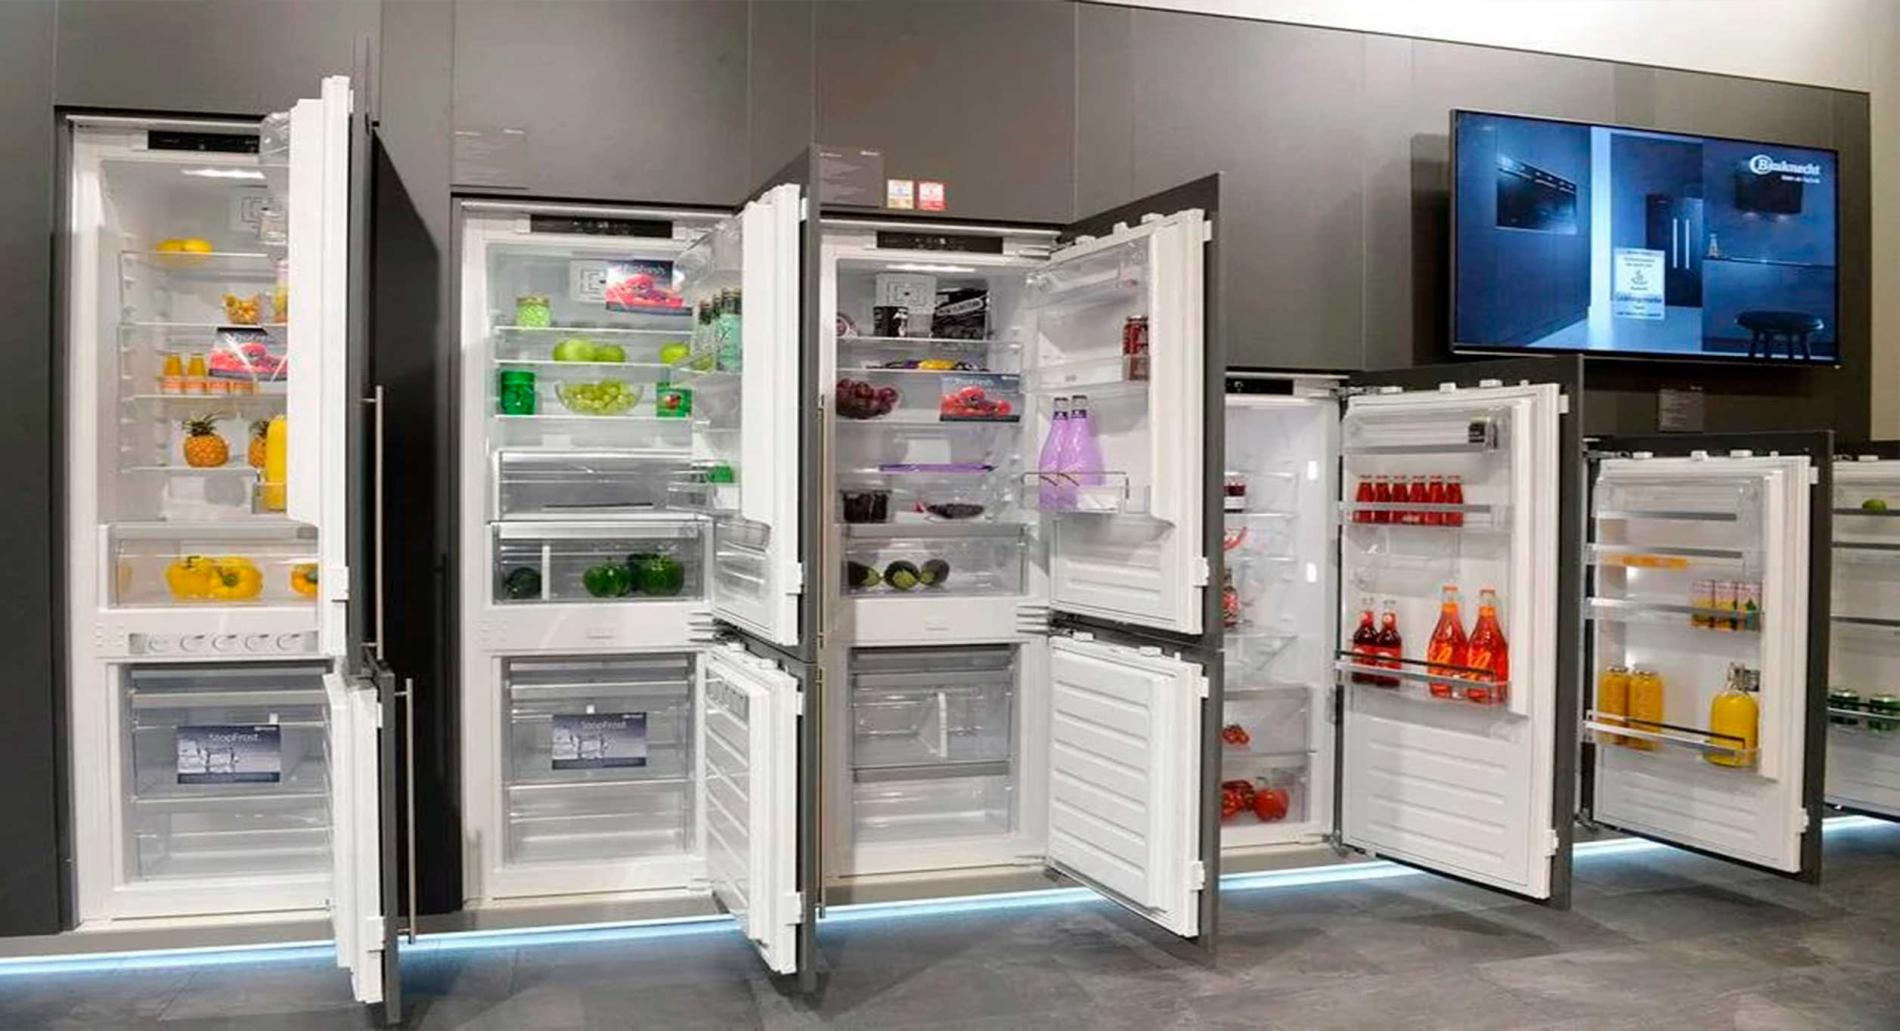 РемБытХолод производит ремонт холодильников BAUKNECHT на дому